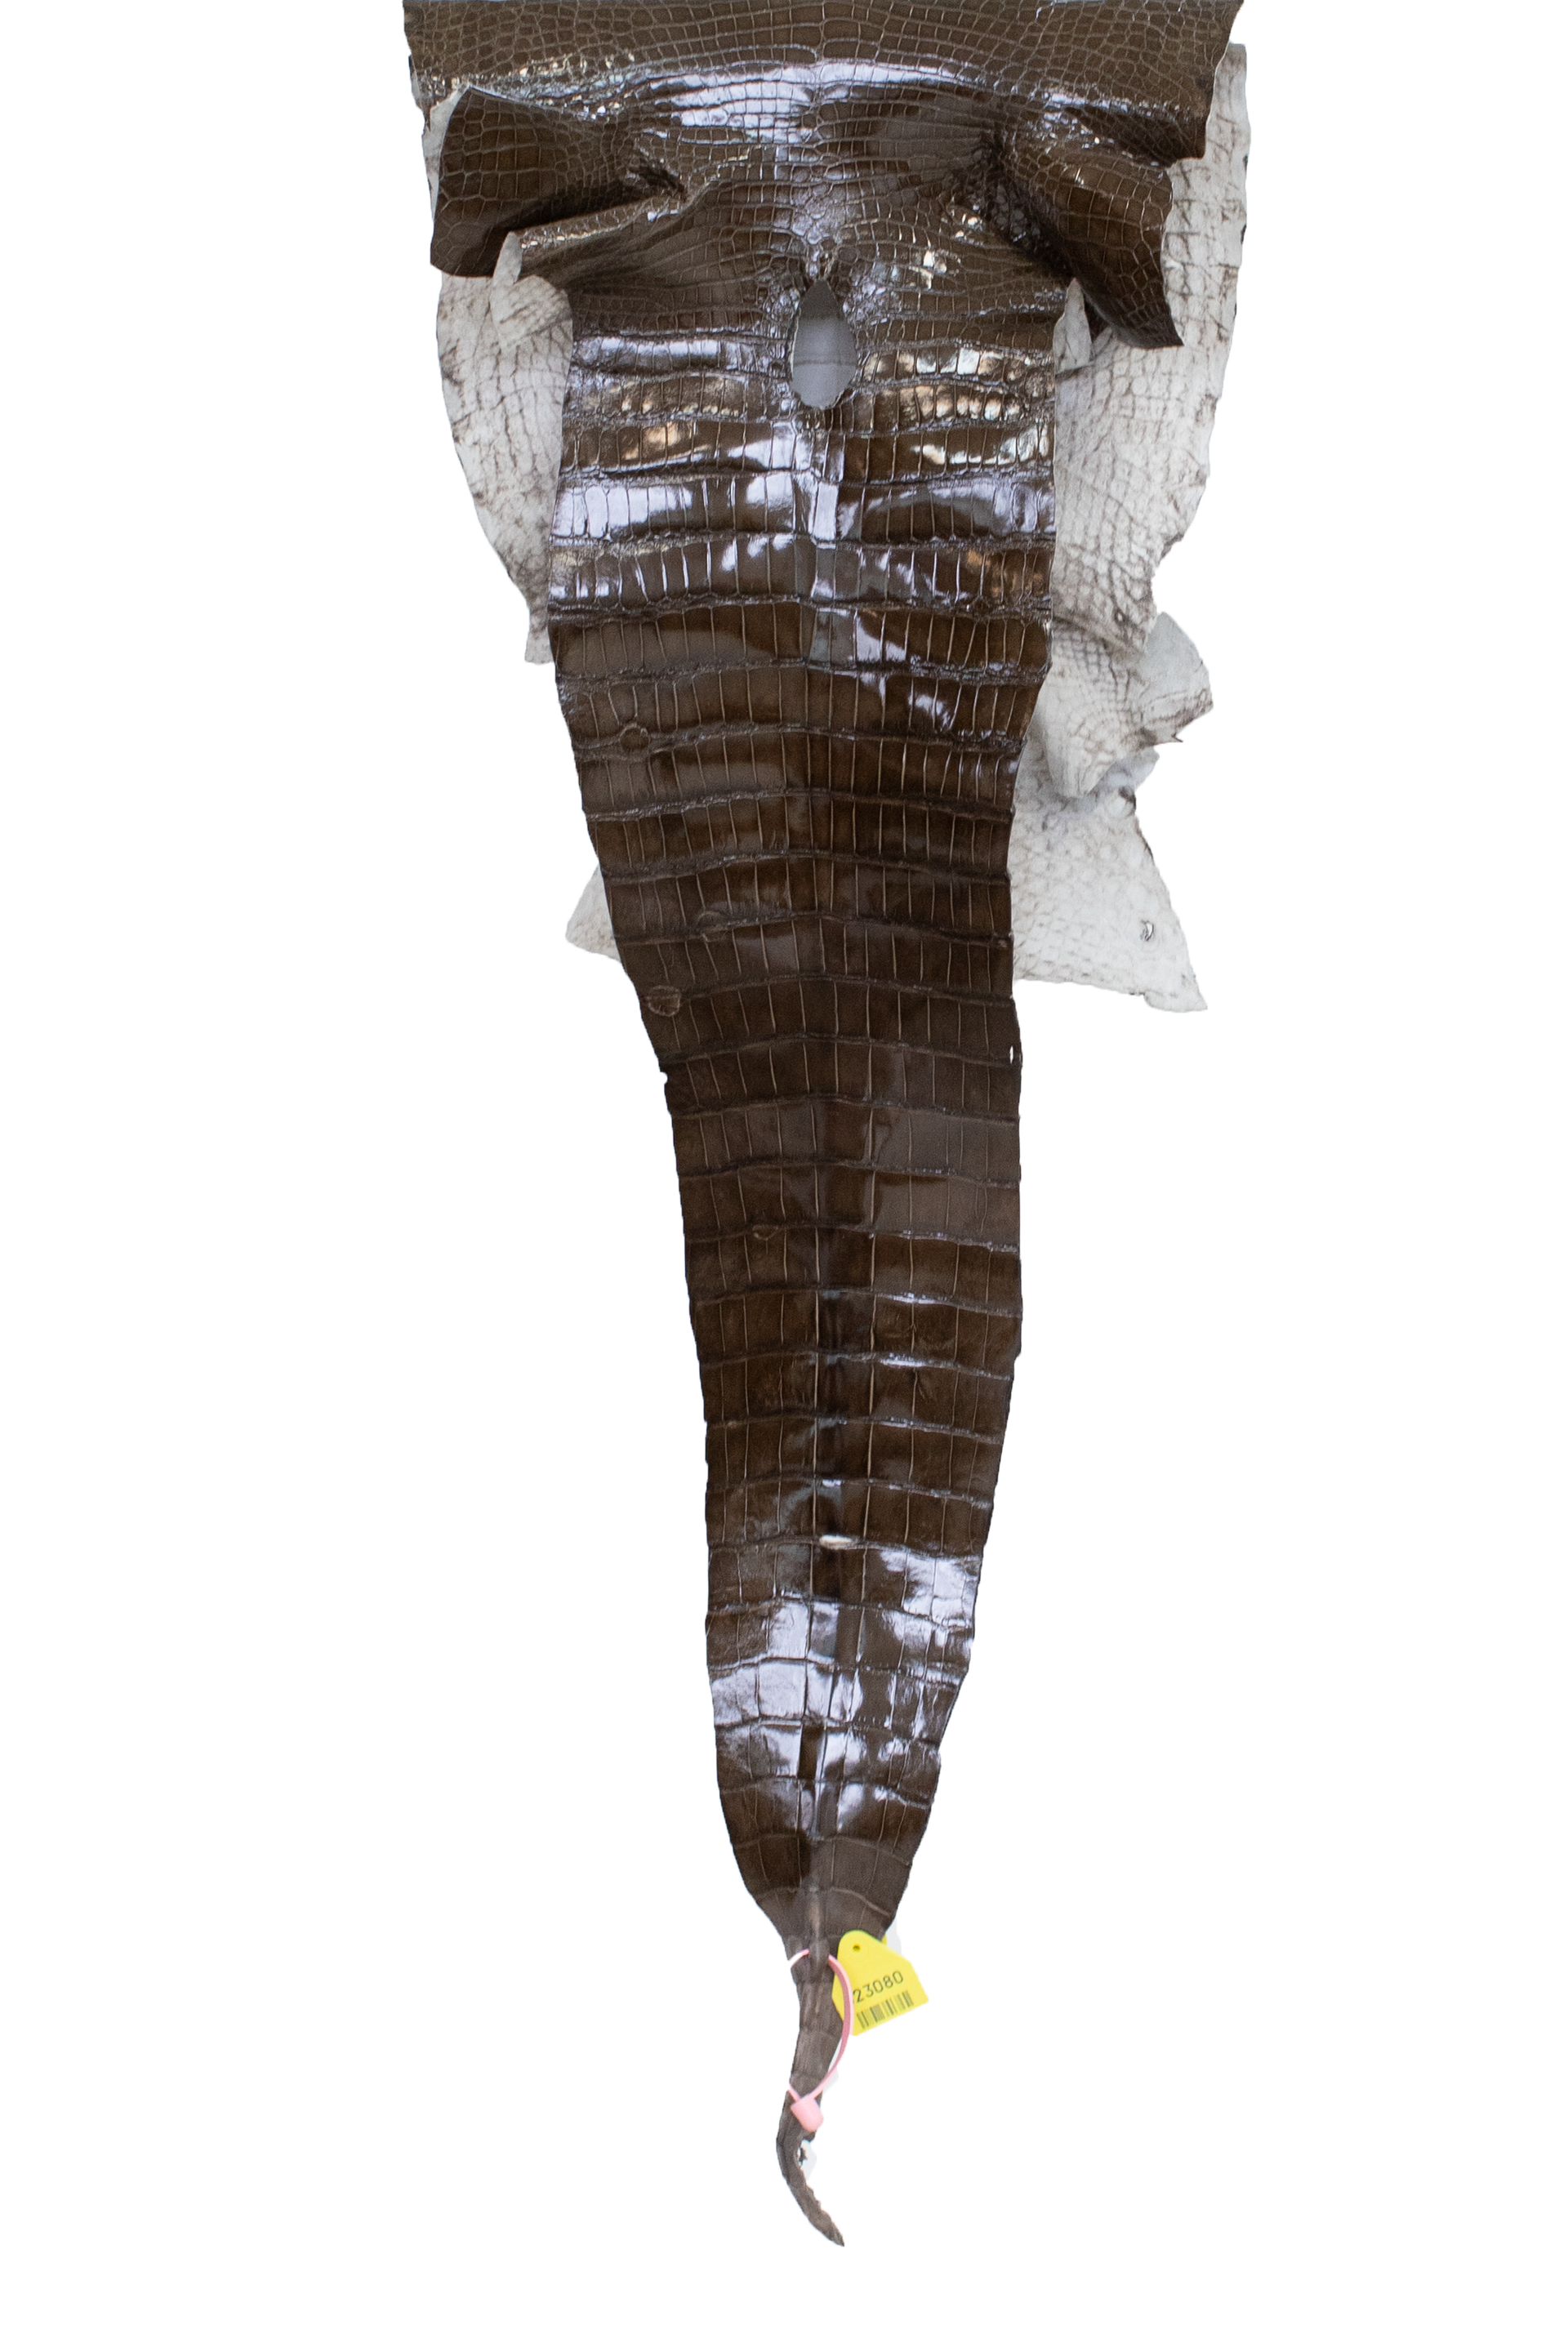 38 cm Grade 2/3 Cocoa Glazed Wild American Alligator Leather - Tag: LA15-0051081